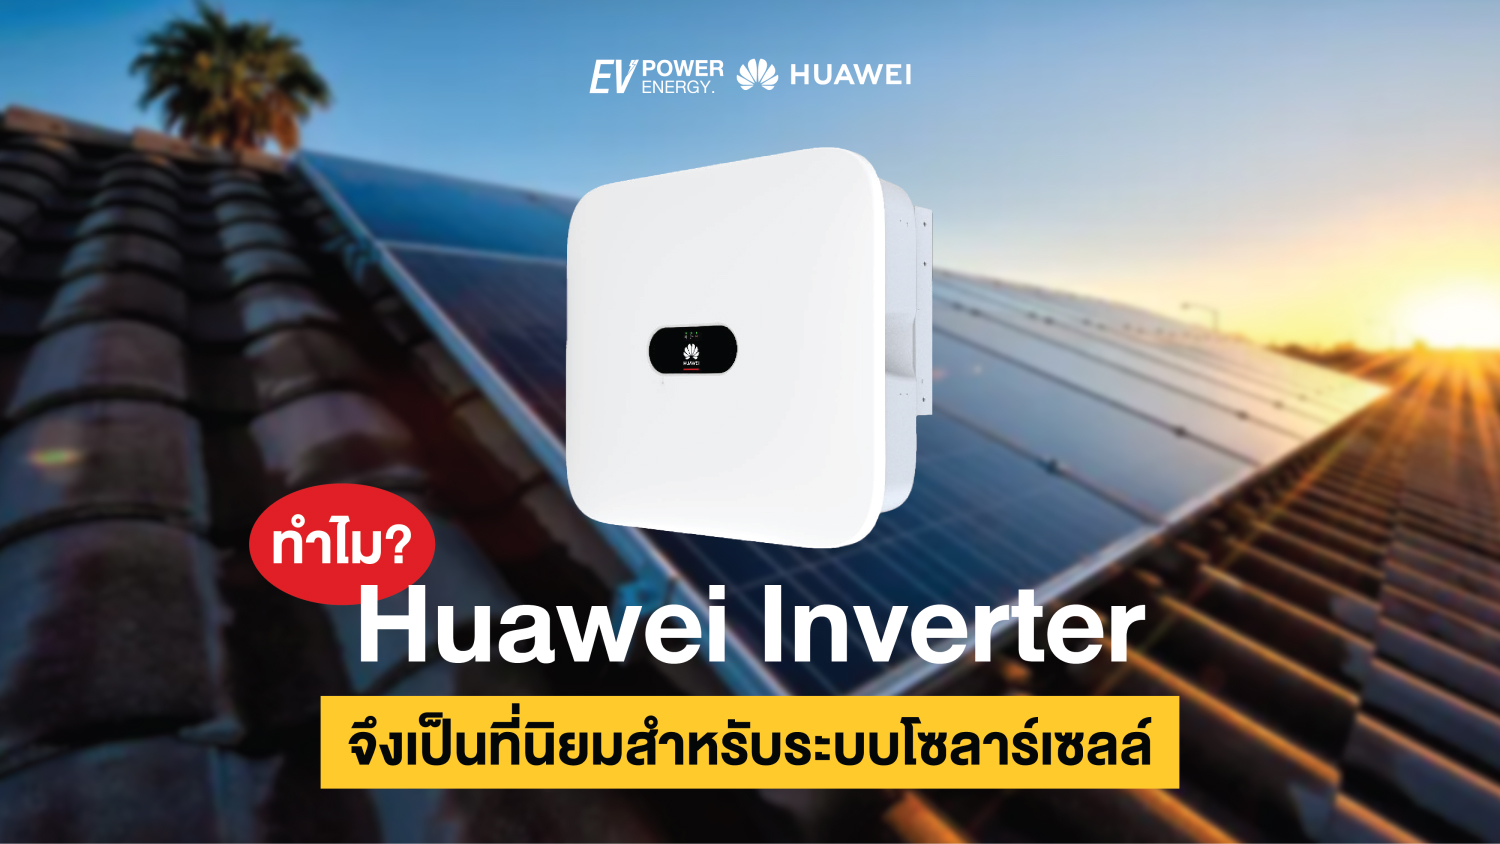 ทำไม Huawei Inverter จึงเป็นที่นิยมสำหรับระบบโซลาร์เซลล์ 1